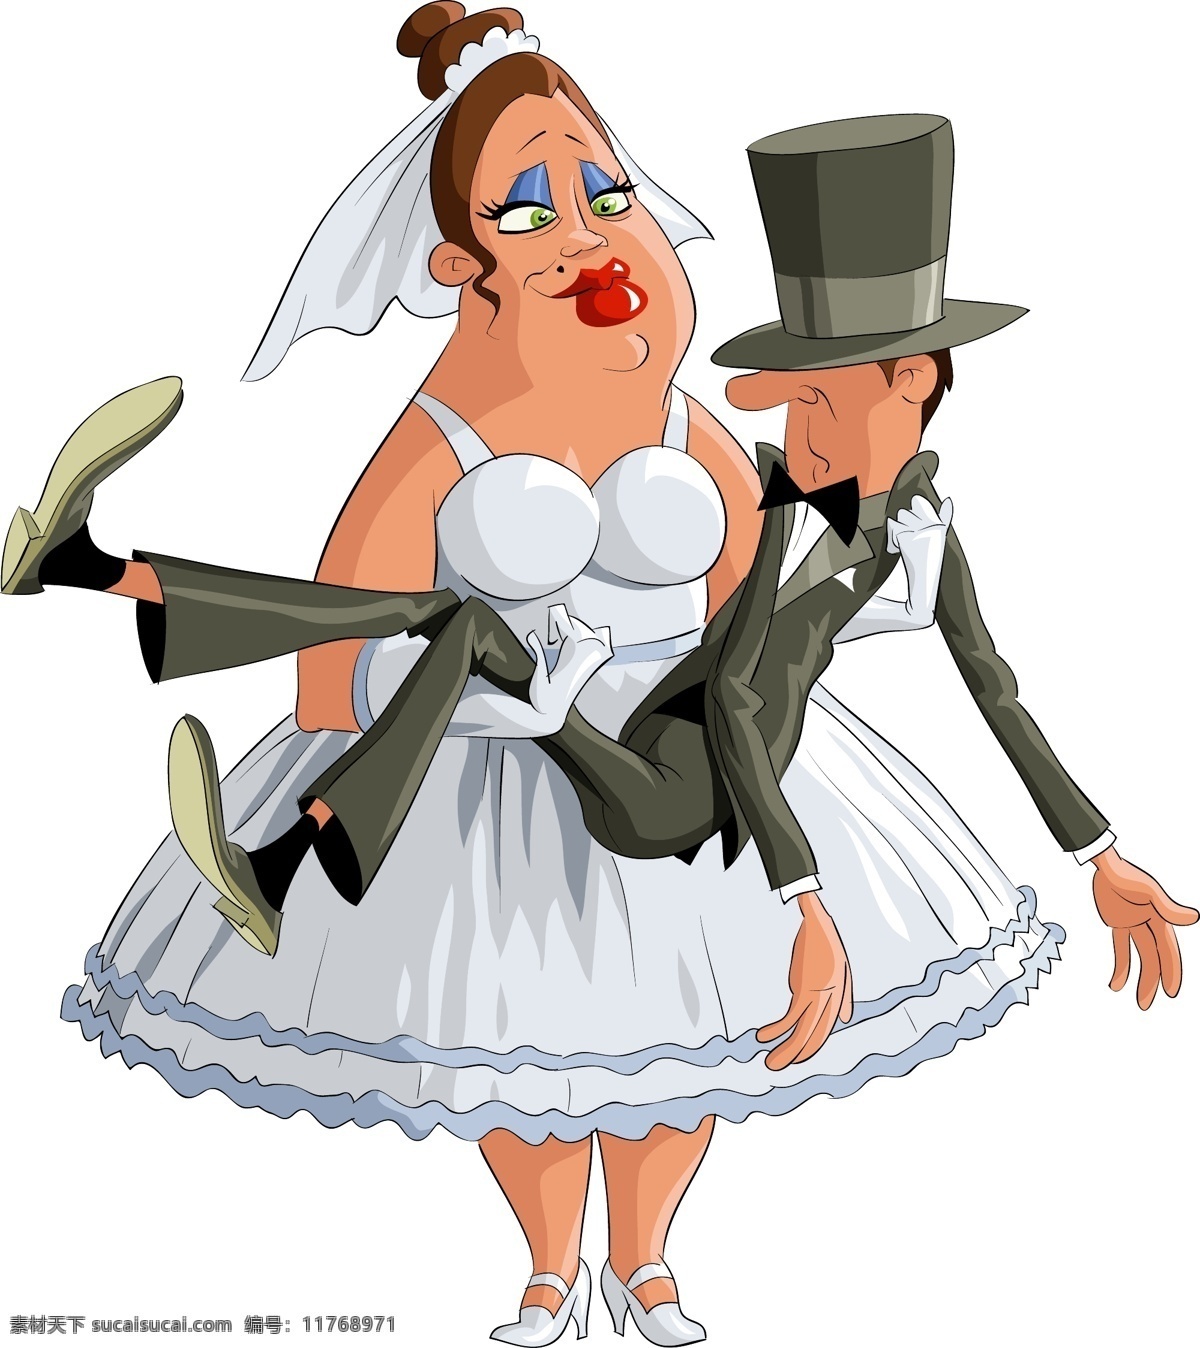 公主 抱 伴侣 插画 矢量 婚礼 新娘 矢量素材 高清 搞笑 装饰图案 设计元素 广告装饰图案